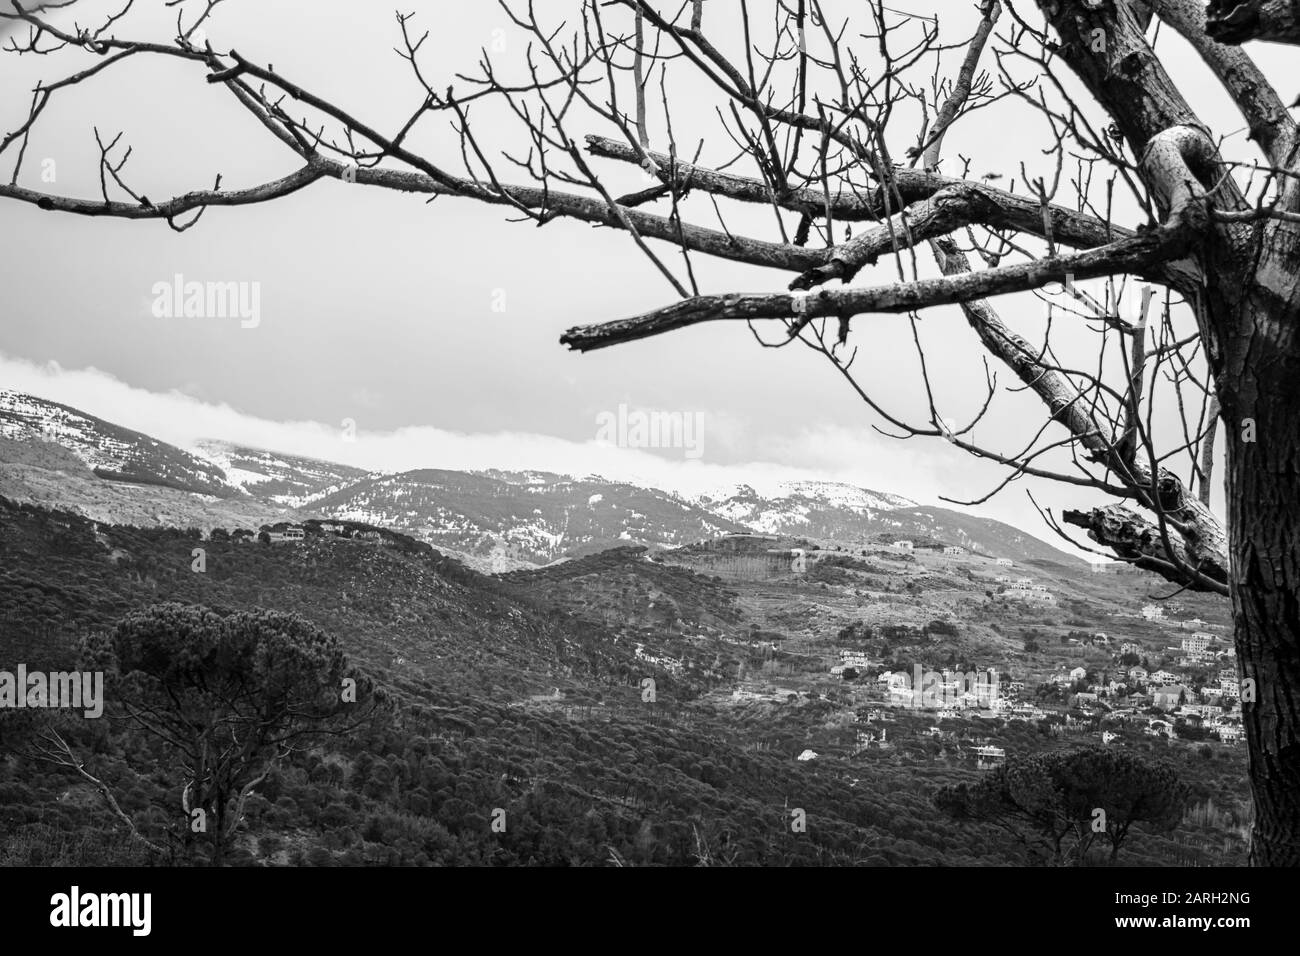 Die Berge des Libanon waren einst von dicken Zedernwäldern beschattet und Baum ist das Symbol des Landes. Schöne Landschaft der bergigen Stadt im Winter Stockfoto